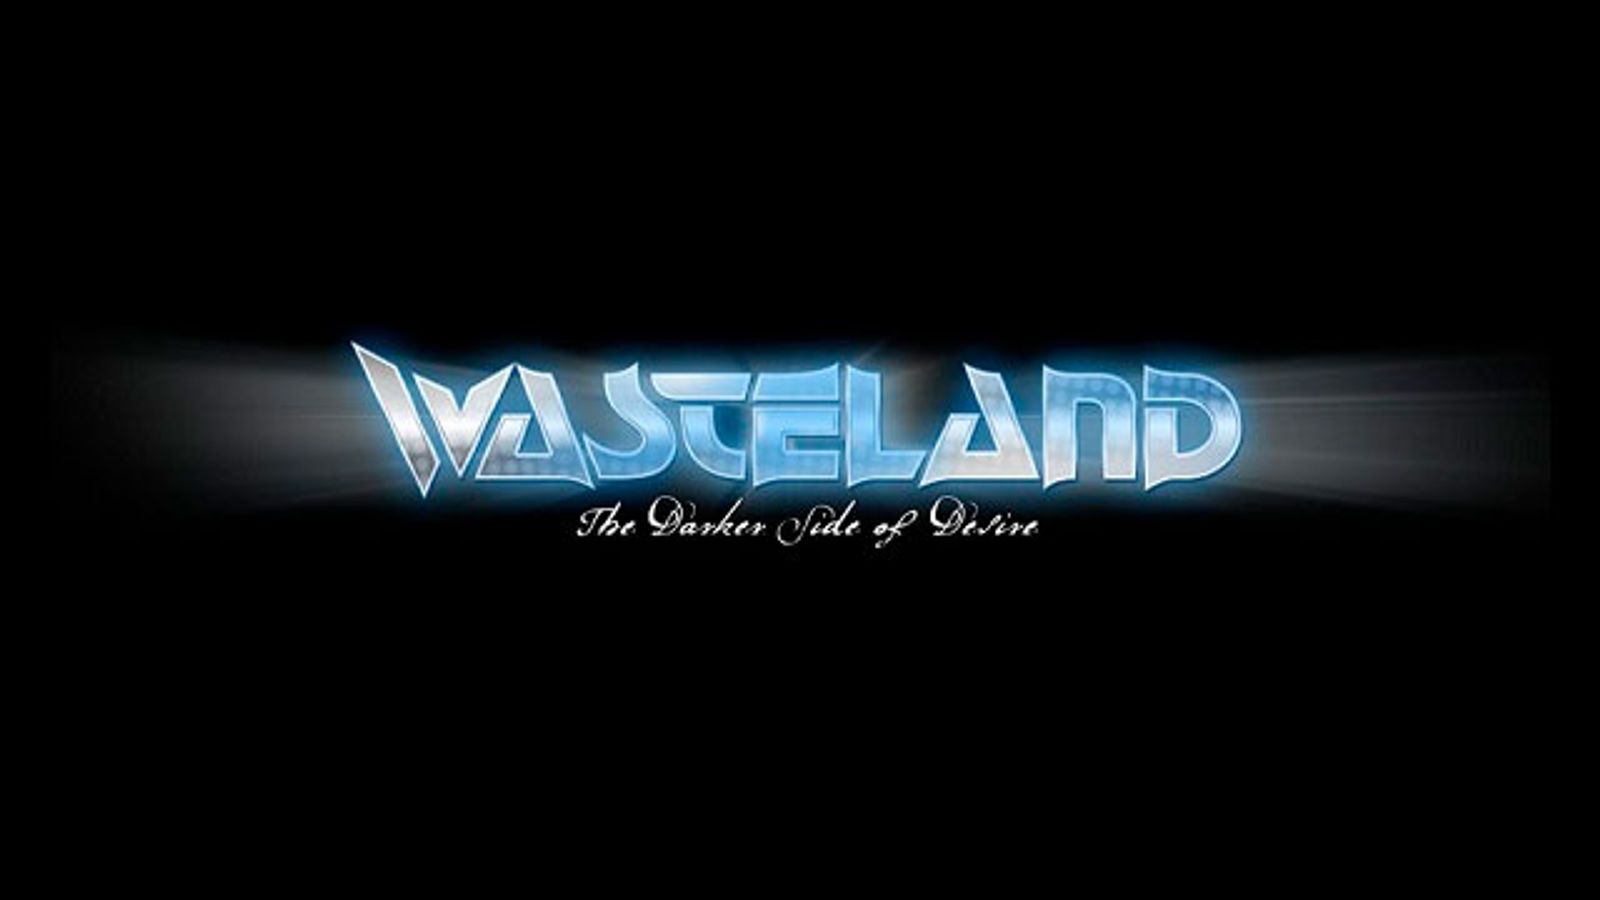 Wasteland Earns AVN Nomination for Best Alternative Website